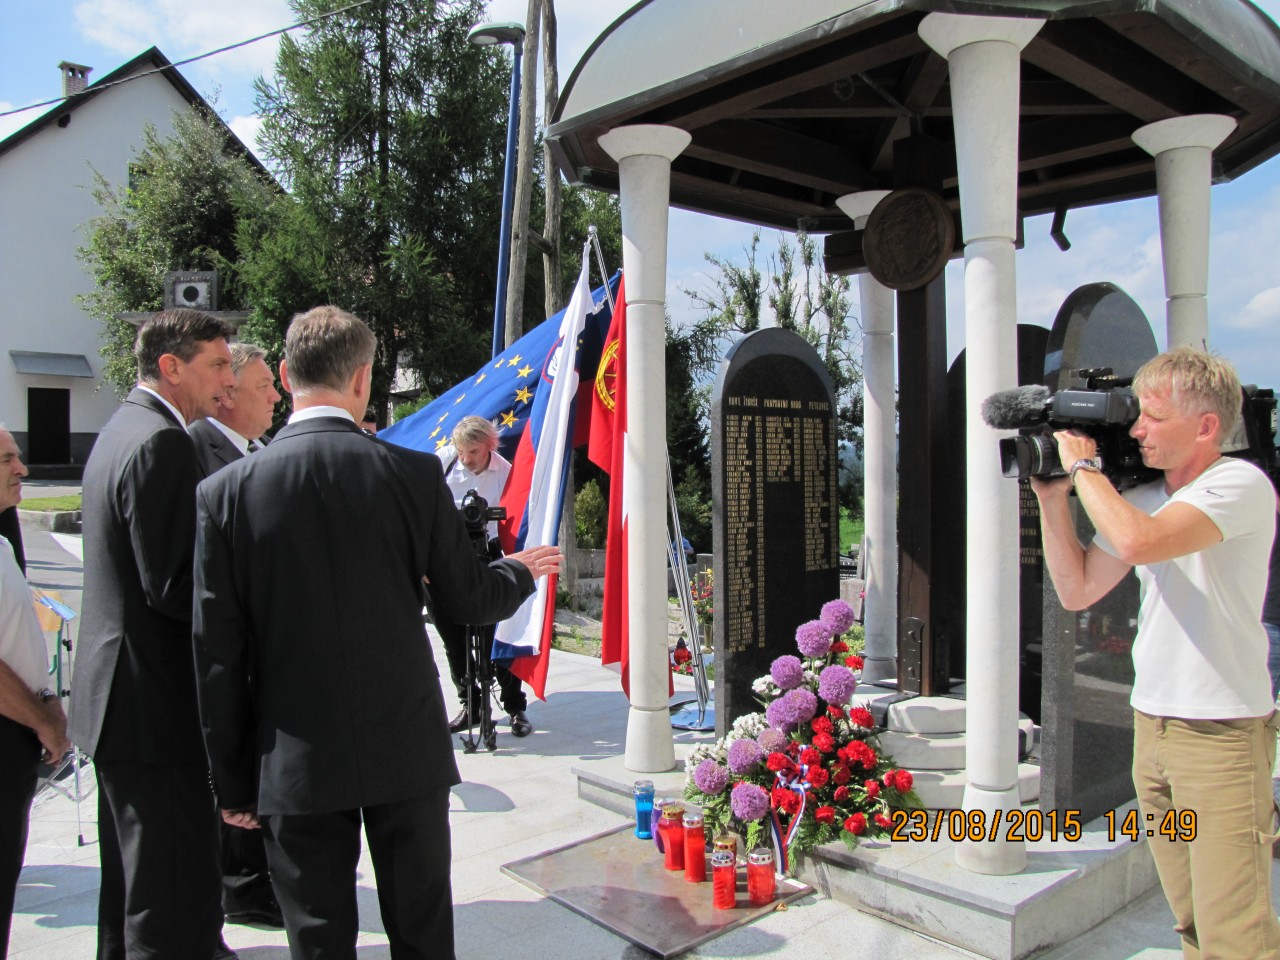 Rovte ob evropskem dnevu totalitarnih in avtoritarnih režimov 23. avgust 2015, Jože Leskovec razloži zgodovino in pomen Kapele Mučencev (Farne Plošče)